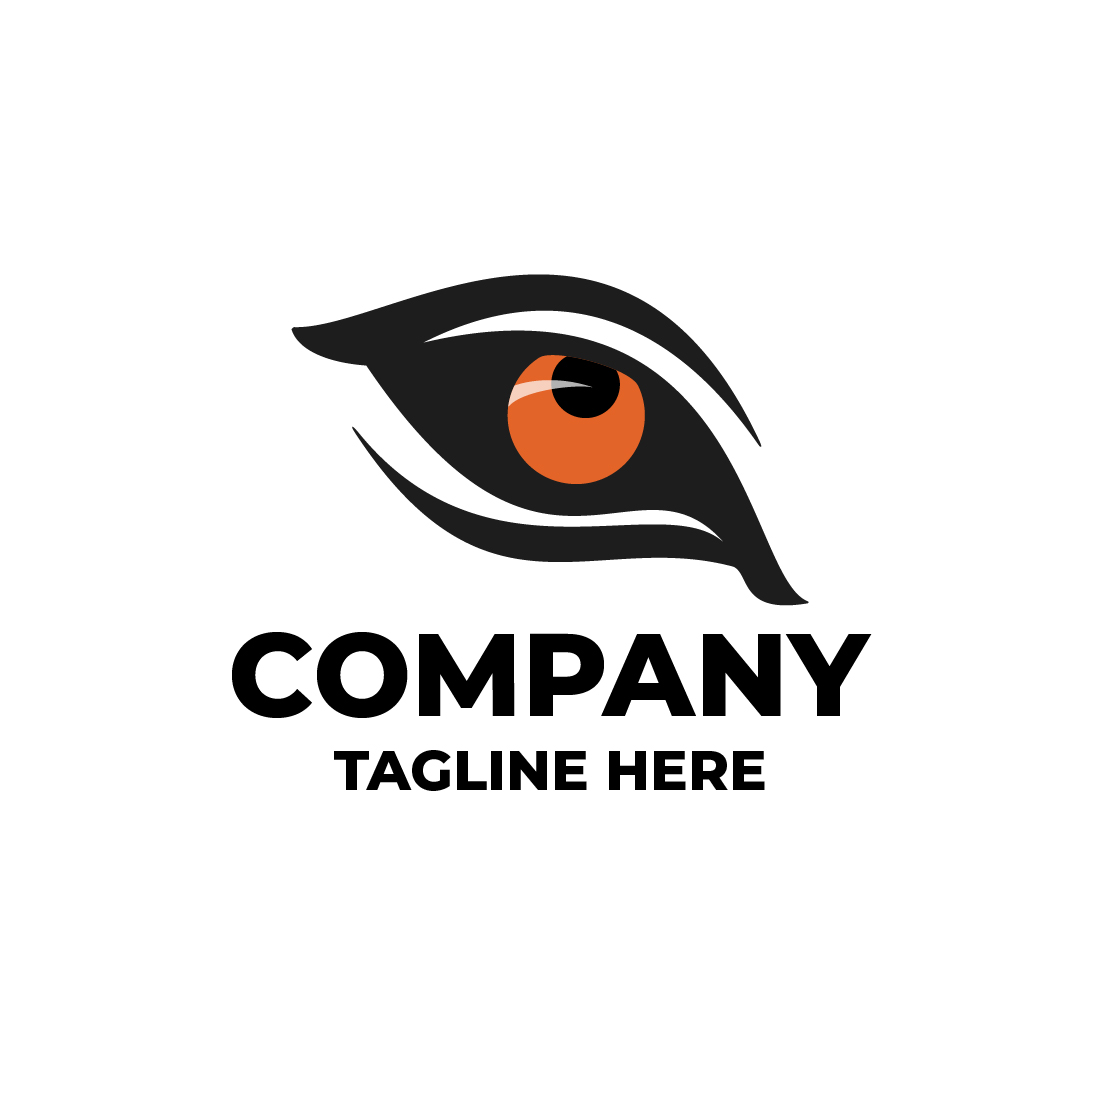 Tiger Eye Logos cover image.